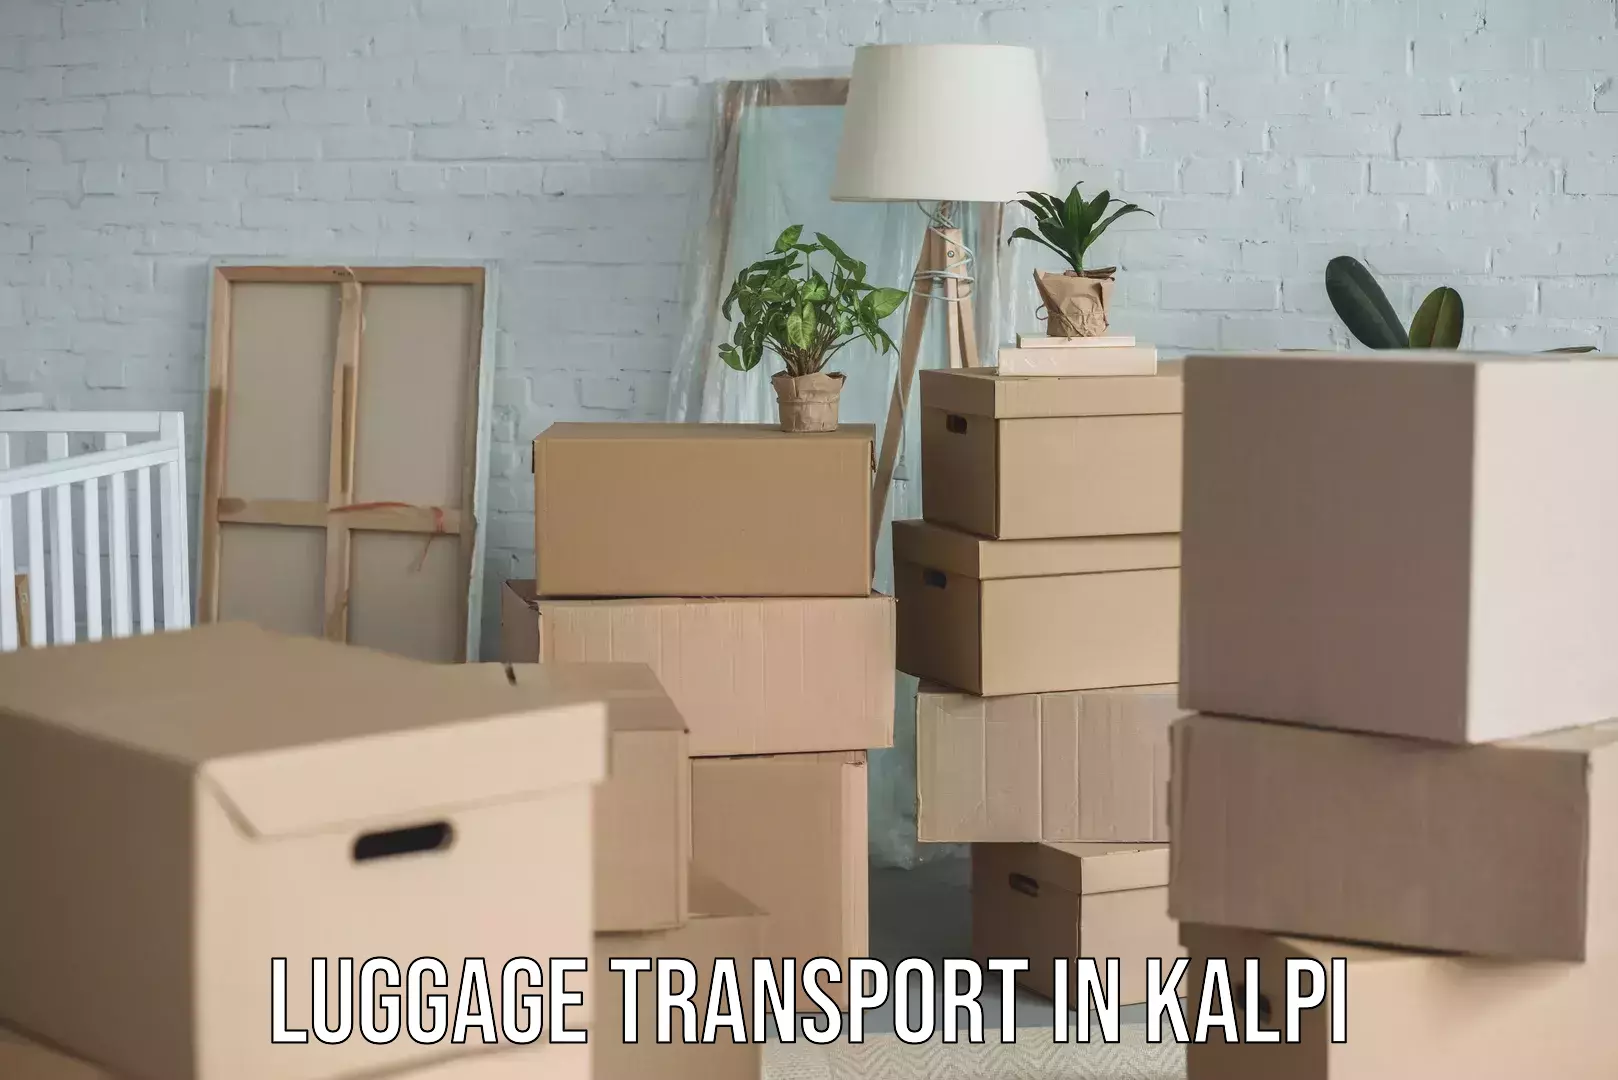 Baggage transport technology in Kalpi